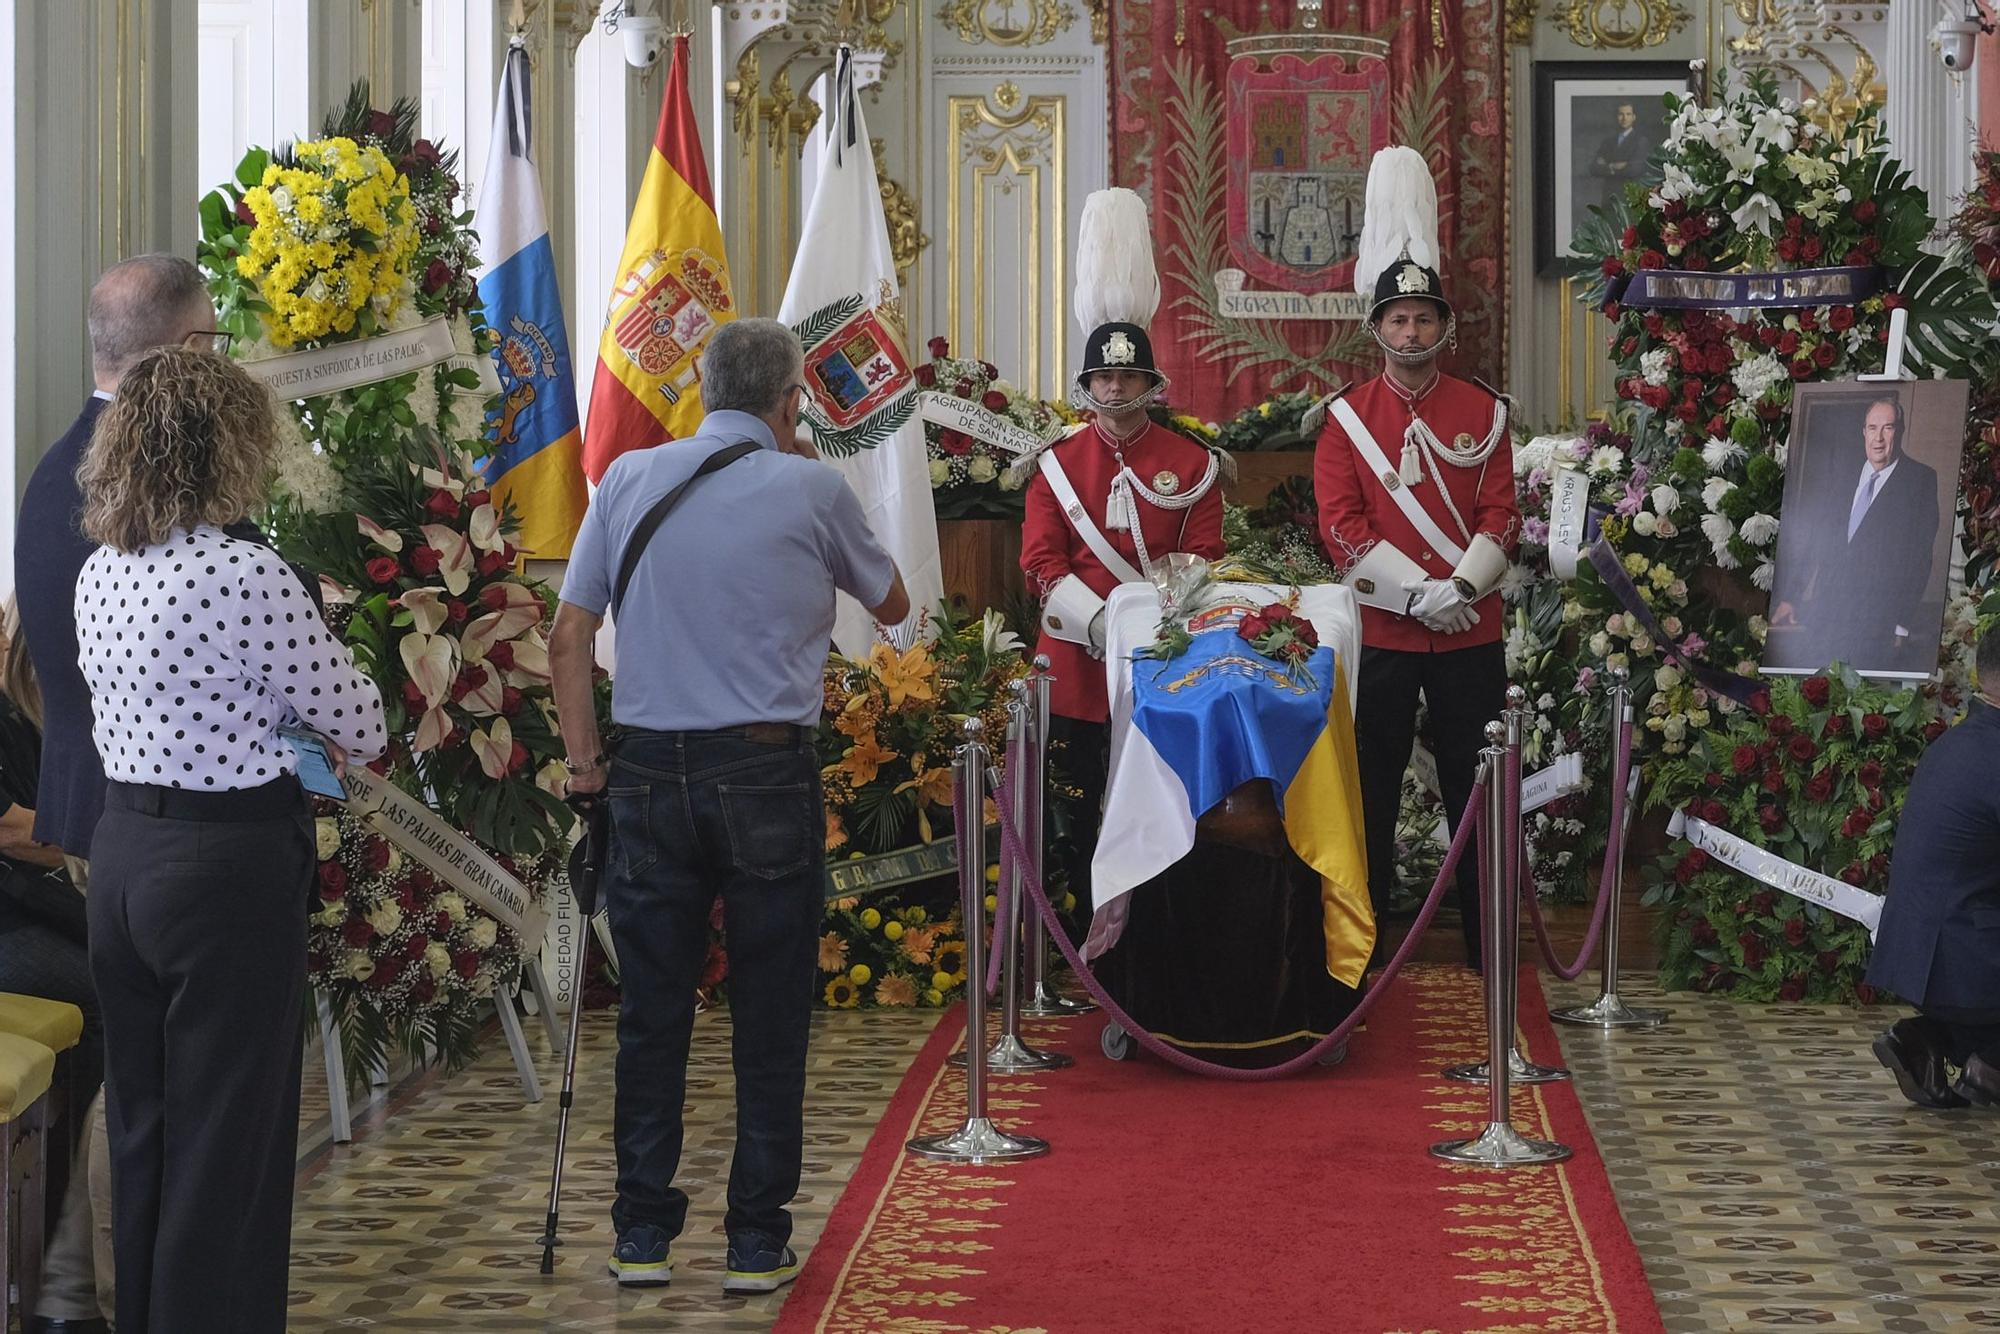 Último adiós al primer presidente de Canarias en el Salón Dorado de las Casas Consistoriales